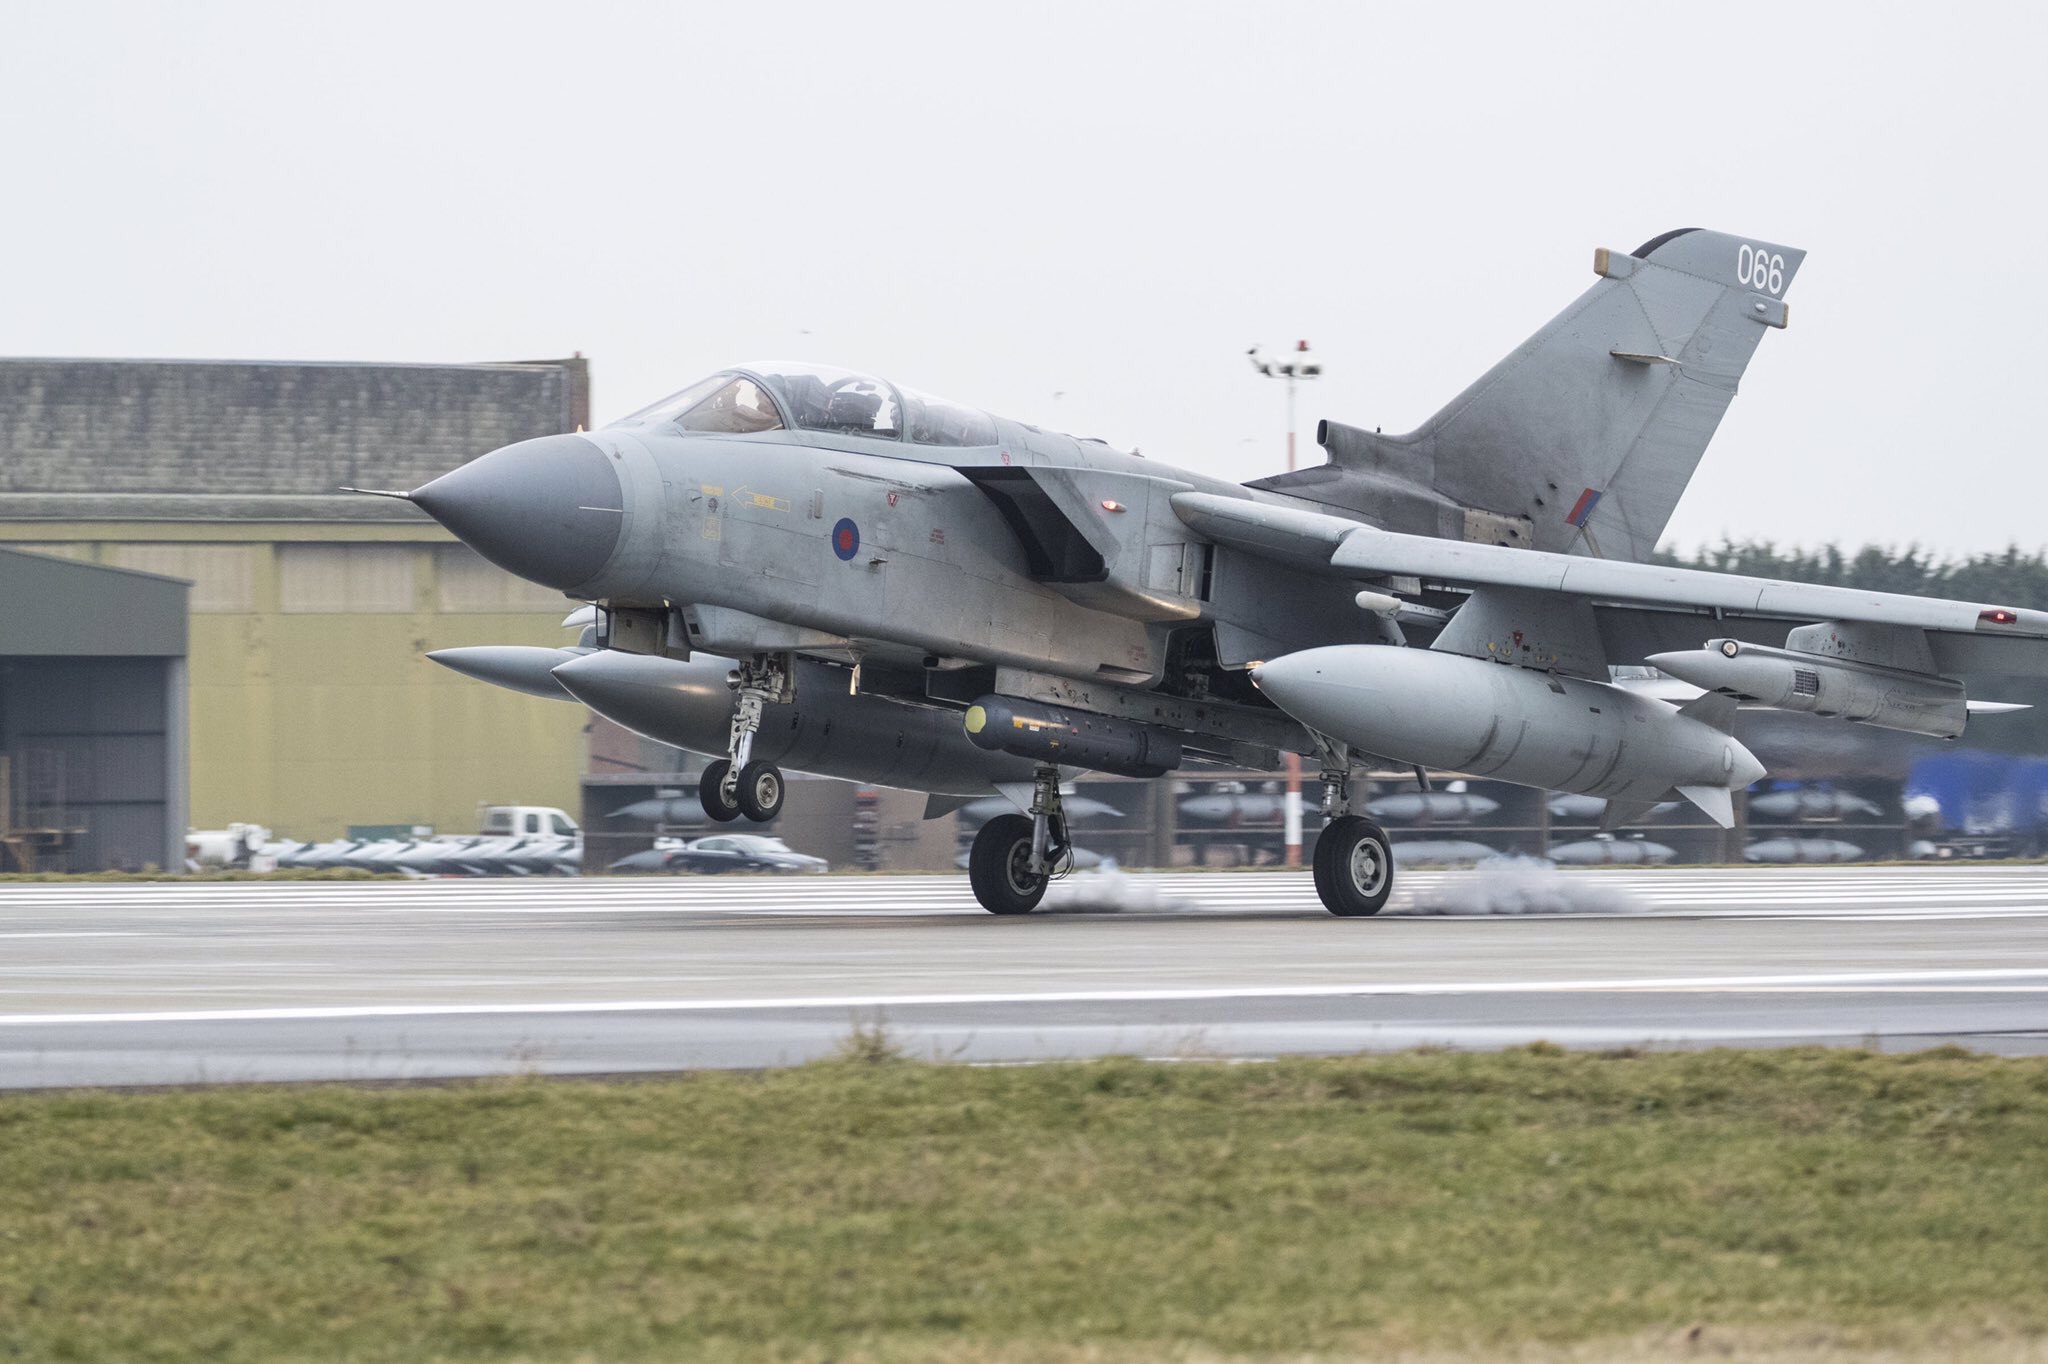 Photo of a Tornado
Photo: RAF Marham